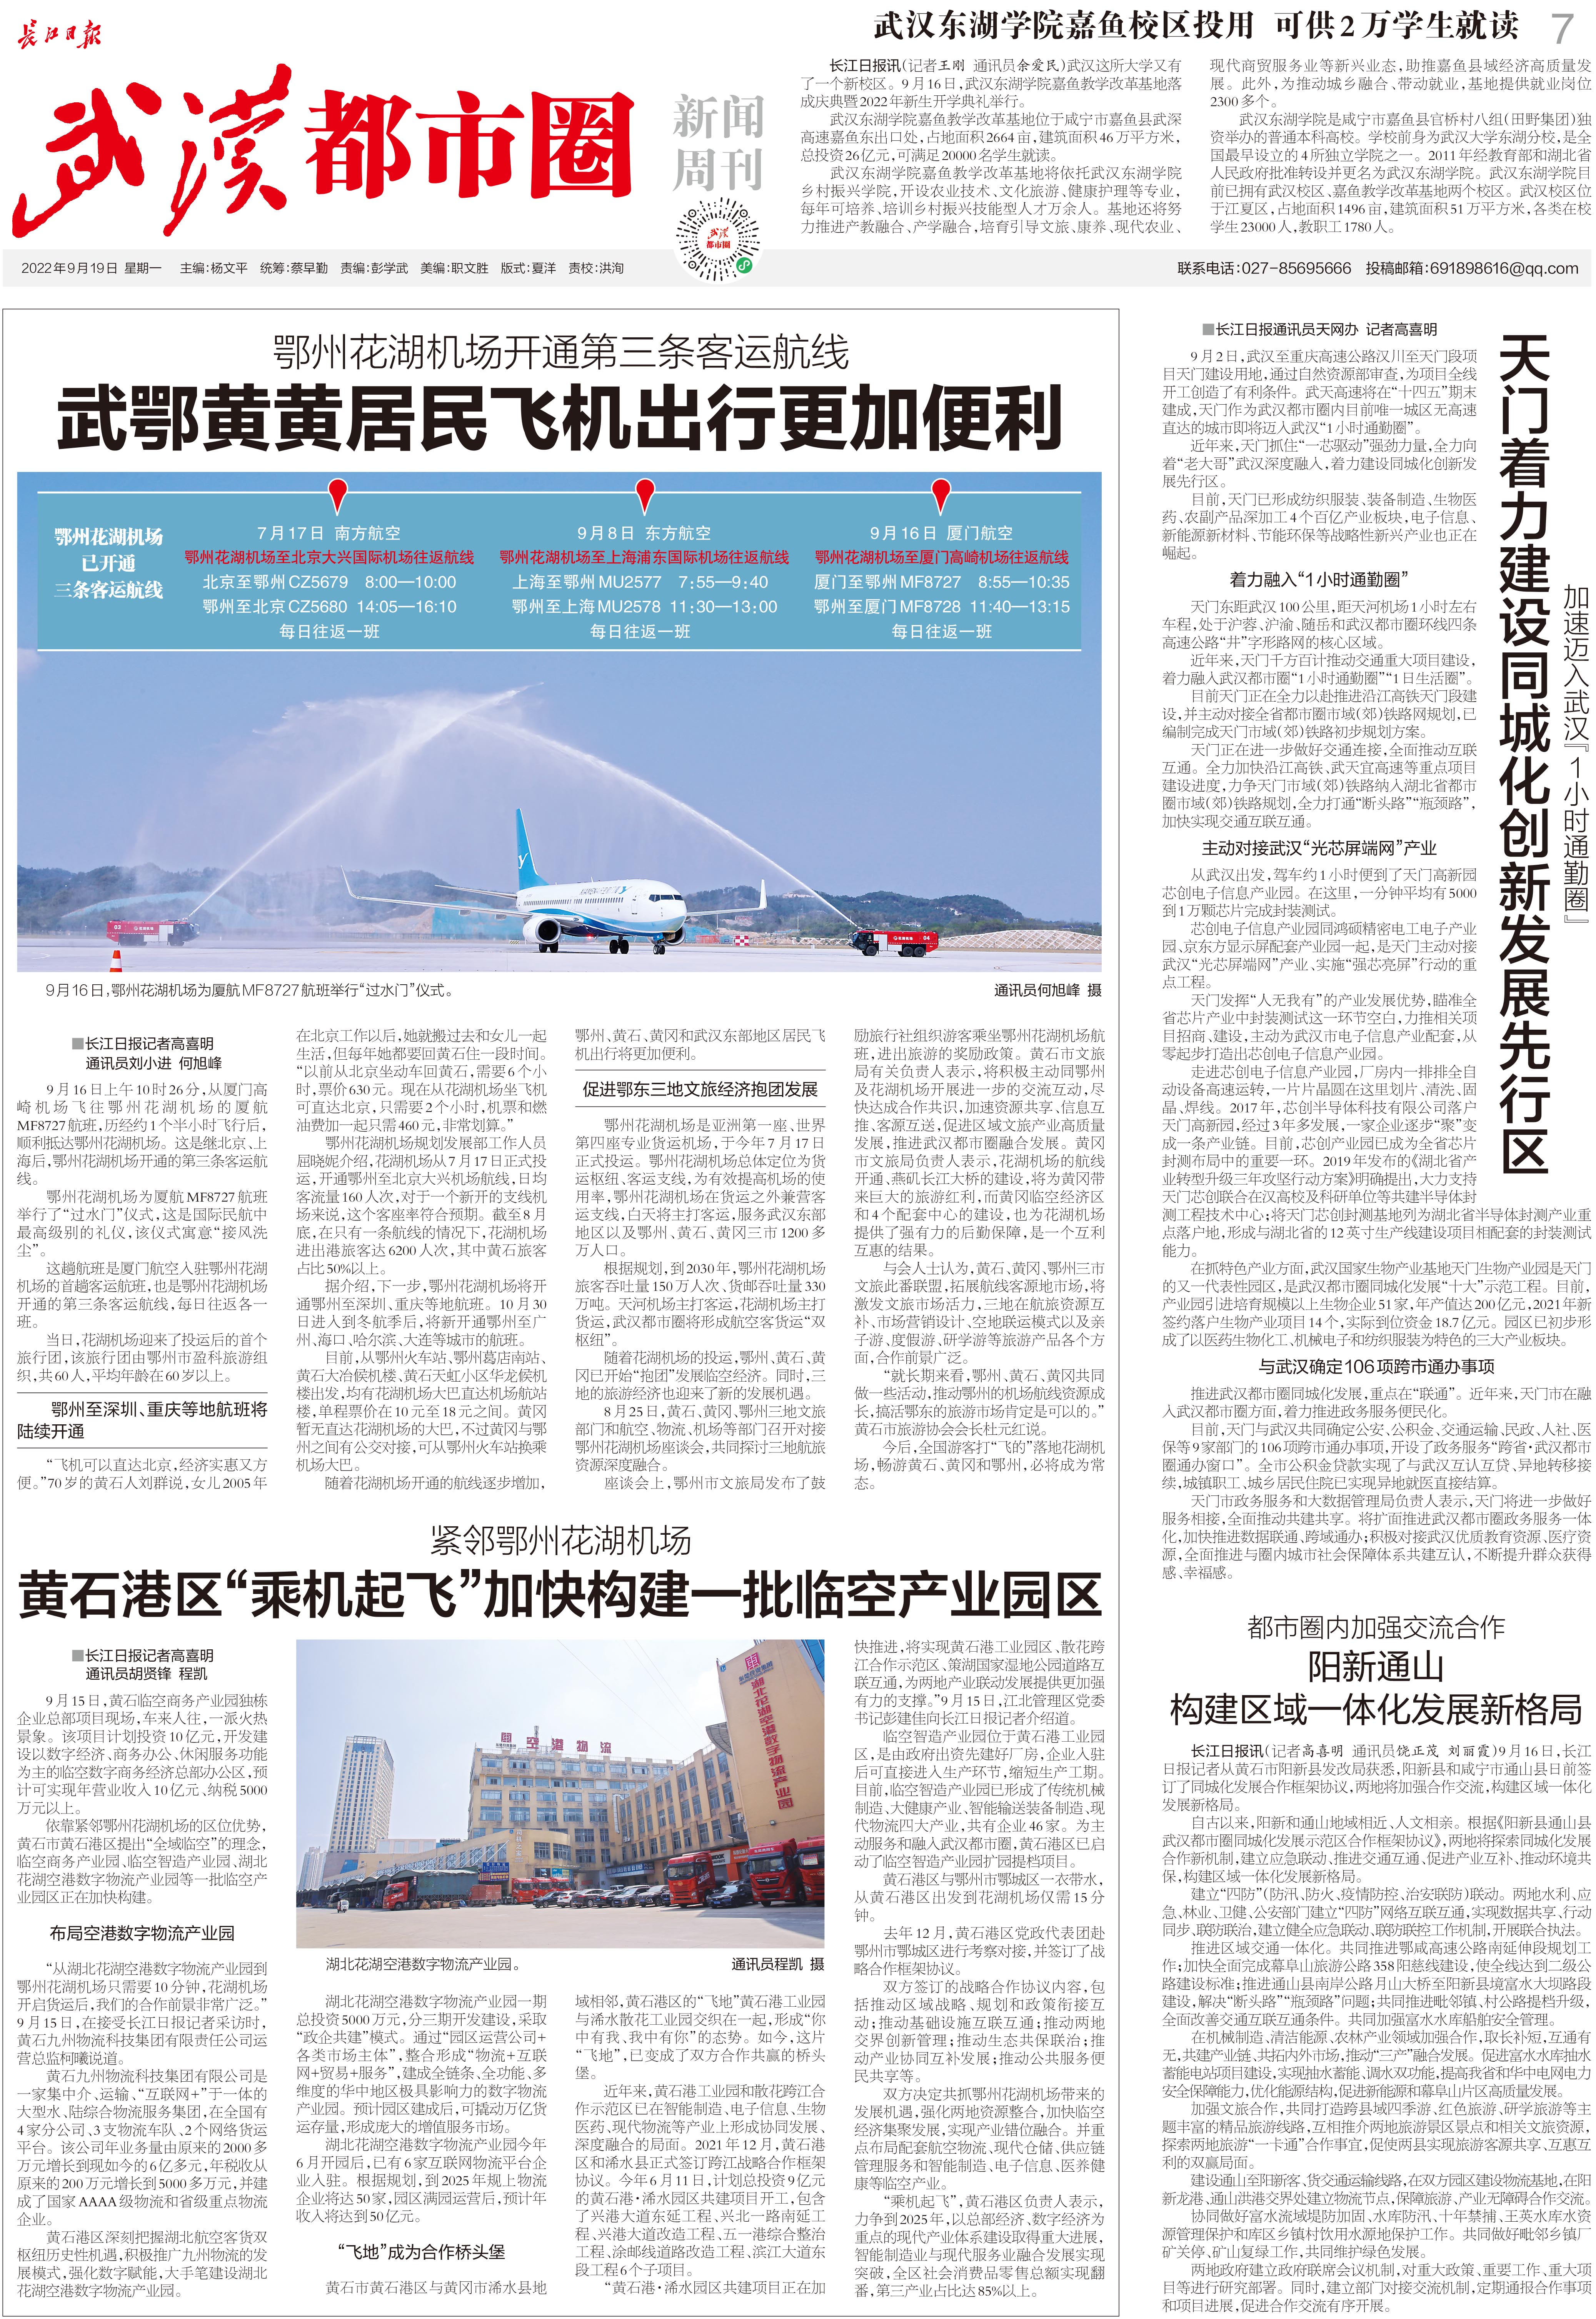 【九城同心向未来】长江日报《武汉都市圈新闻周刊》(2022年9月19日第